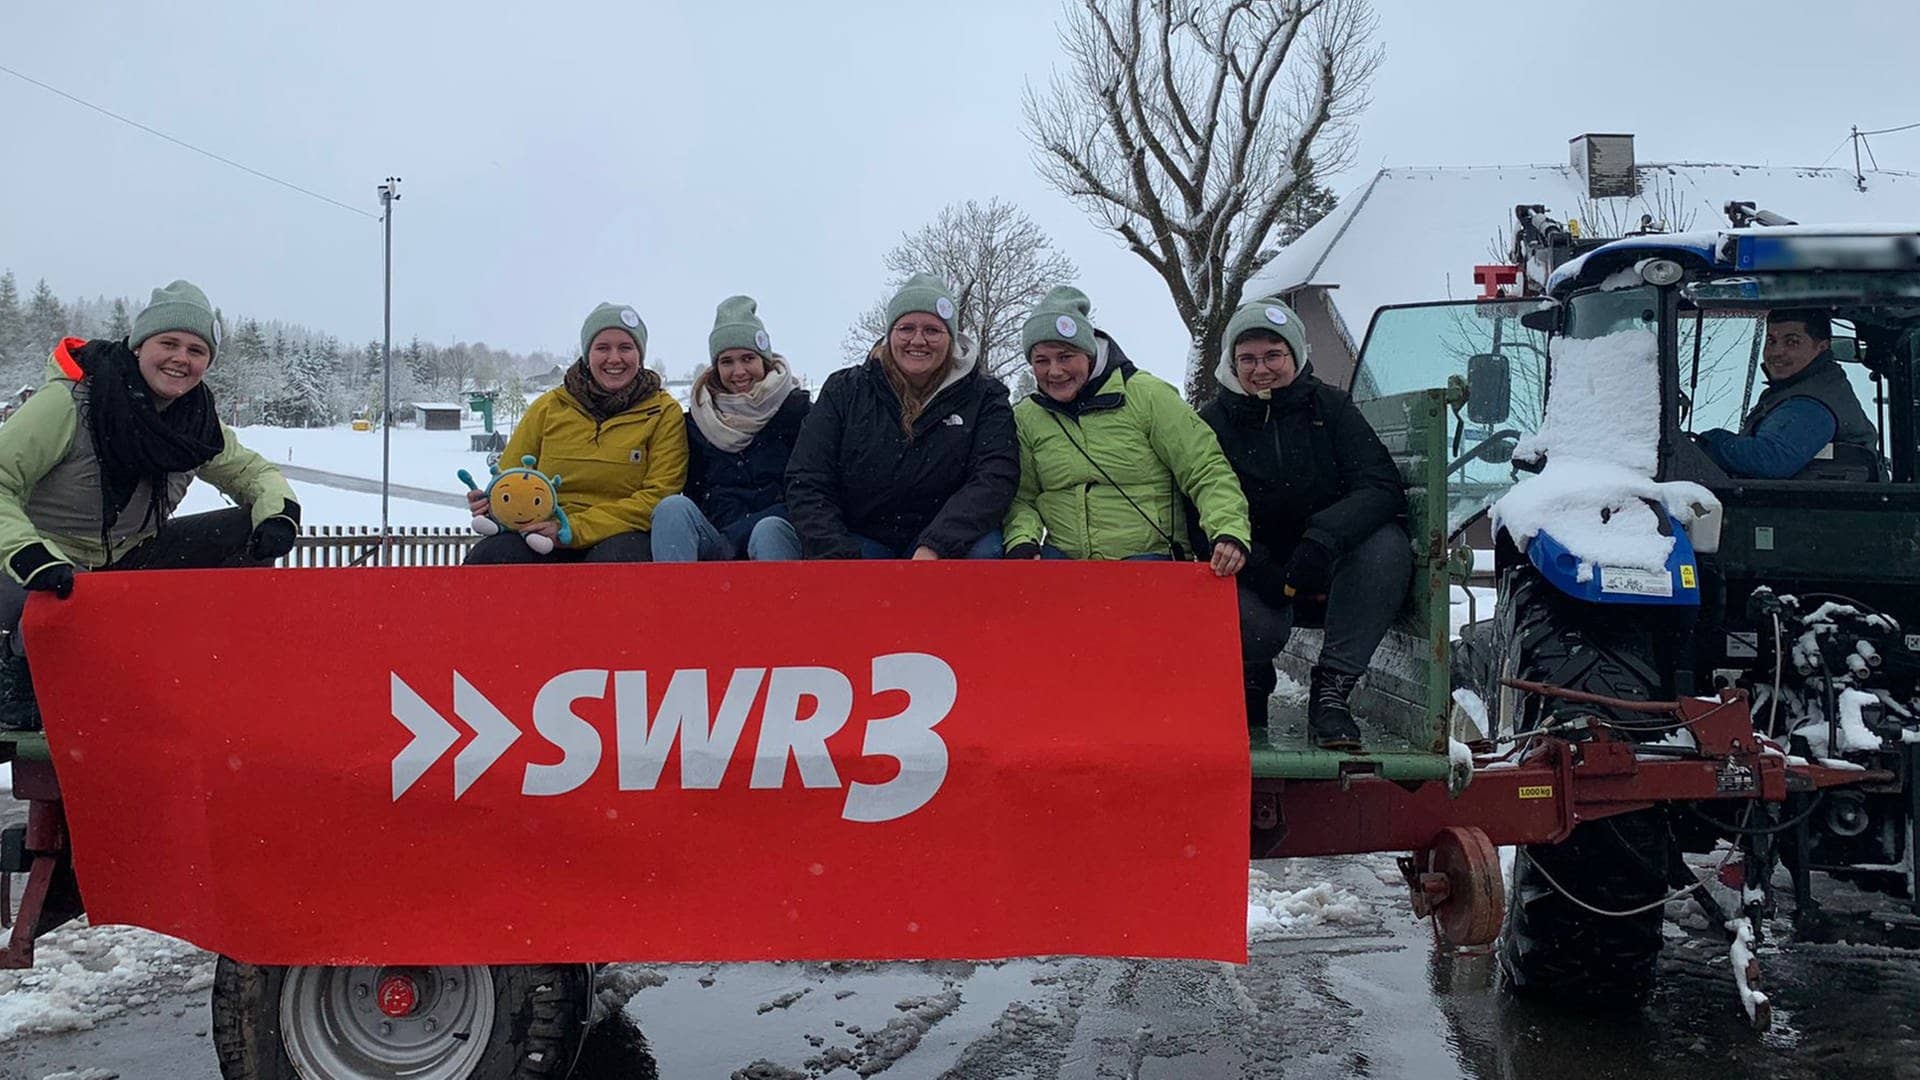 in Schwarzenbach liegt während der 72-Stunden-Aktion viel Schnee (Foto: SWR3, 72-Stunden-Gruppe aus Schwarzenbach)